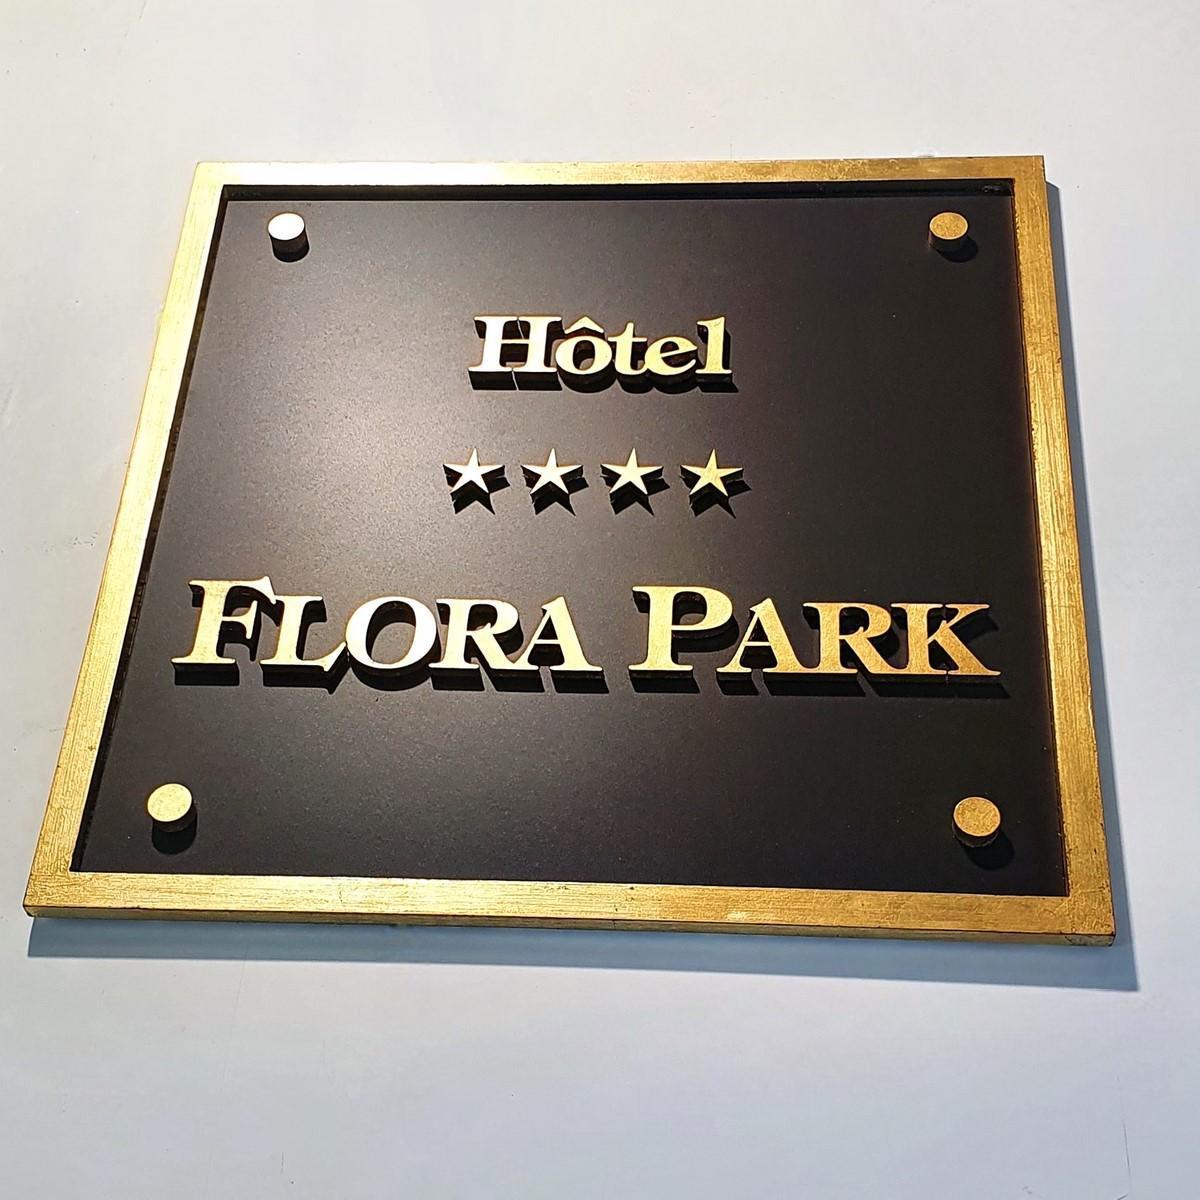 flora park hotel plaque enseigne signalétique signage building_20230619192742